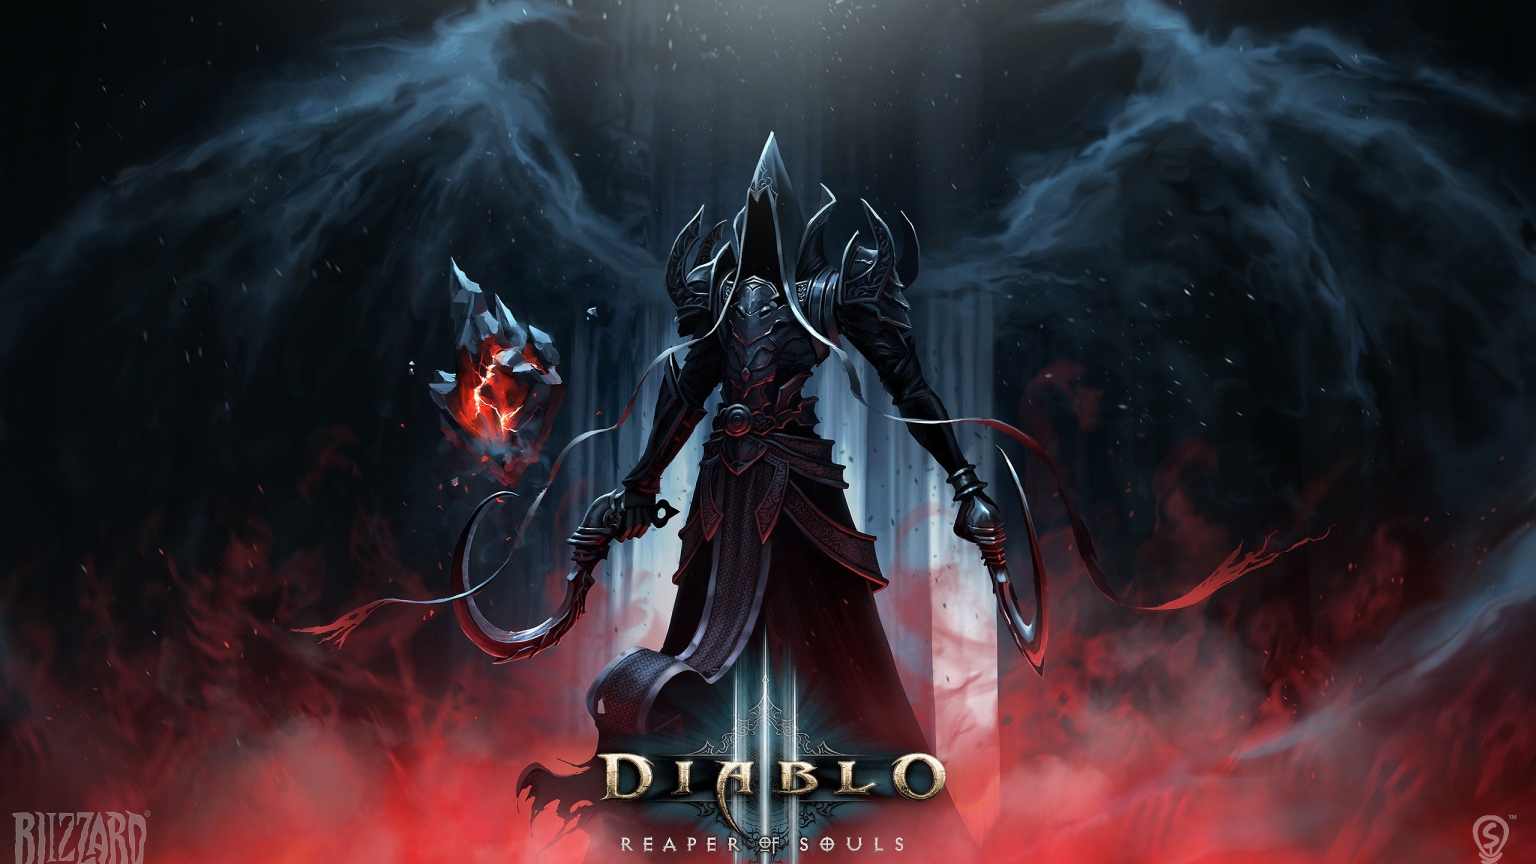 Diablo 3 Reaper of Souls for 1536 x 864 HDTV resolution